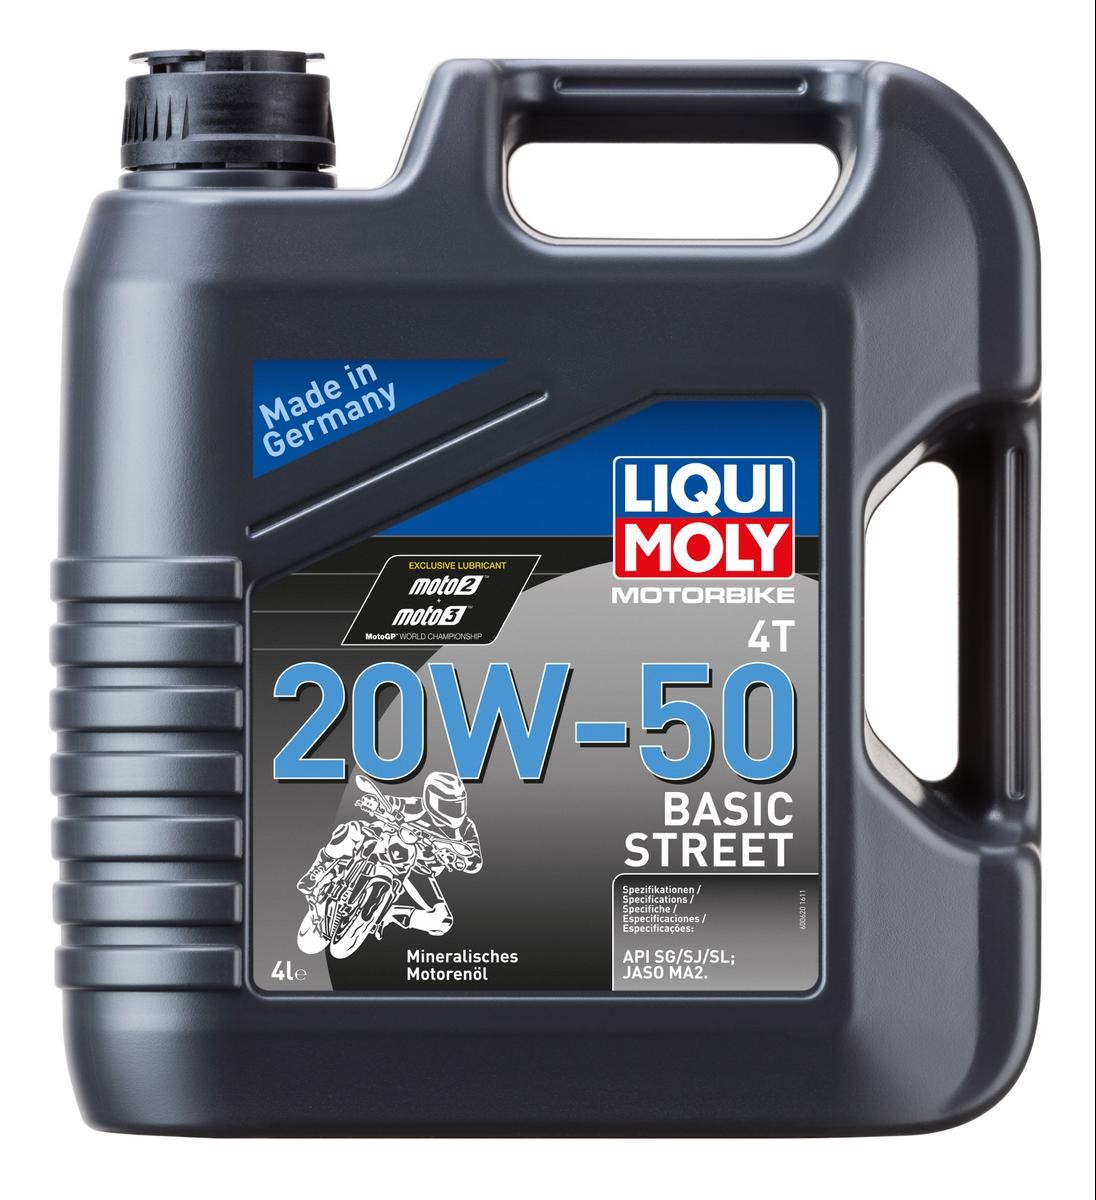 LIQUI MOLY 20W-50 Motorbike 4T, Basic Street 20W-50, 4l, Mineral Oil Engine oil 20729 cheap